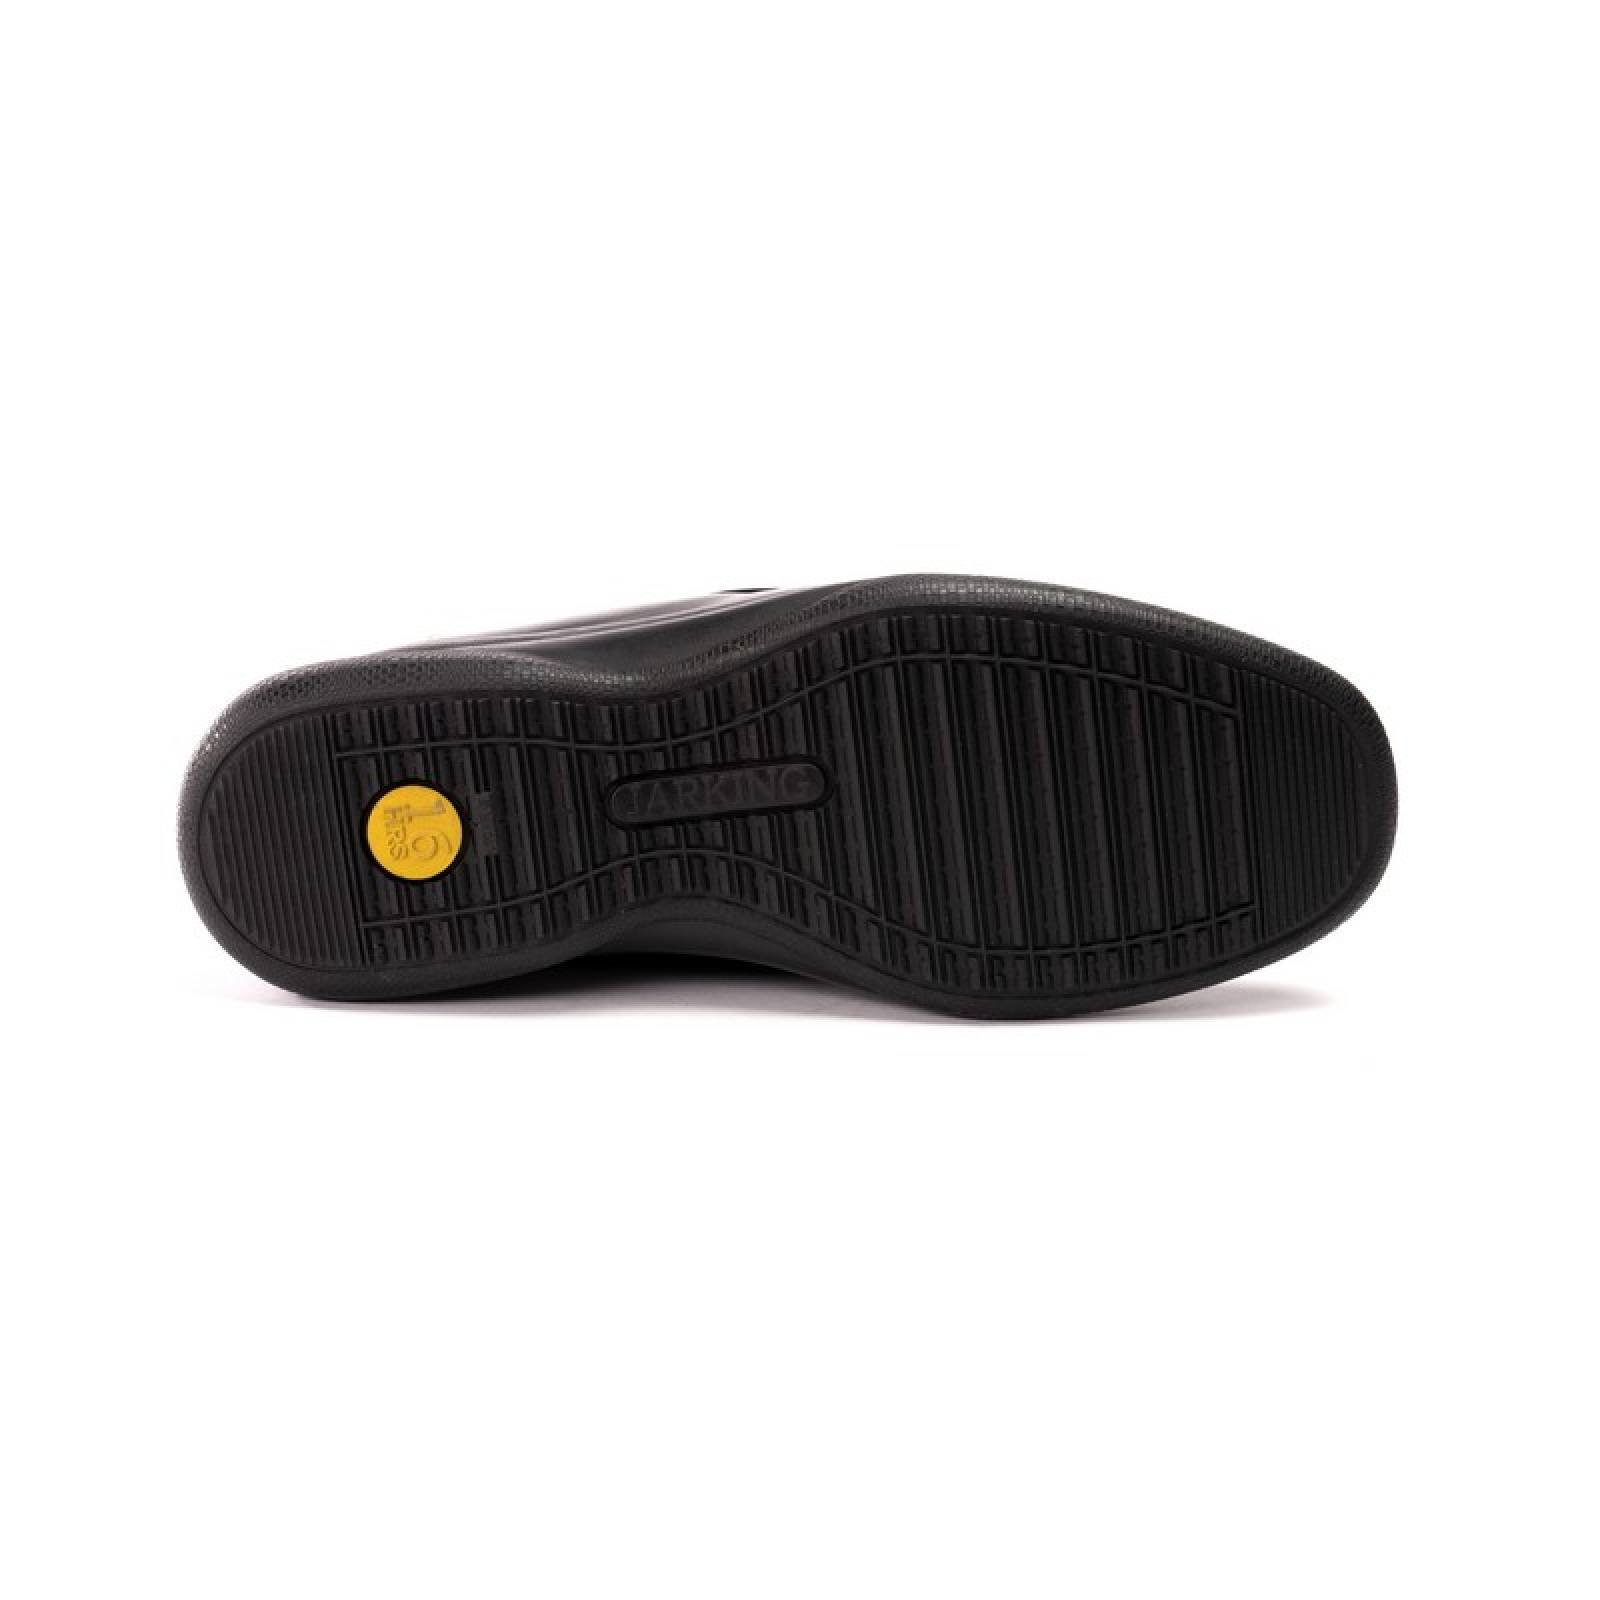 Jarking - Zapato Casual Negro con Elásticos en Empeine y Plantilla Memory Foam para Caballero